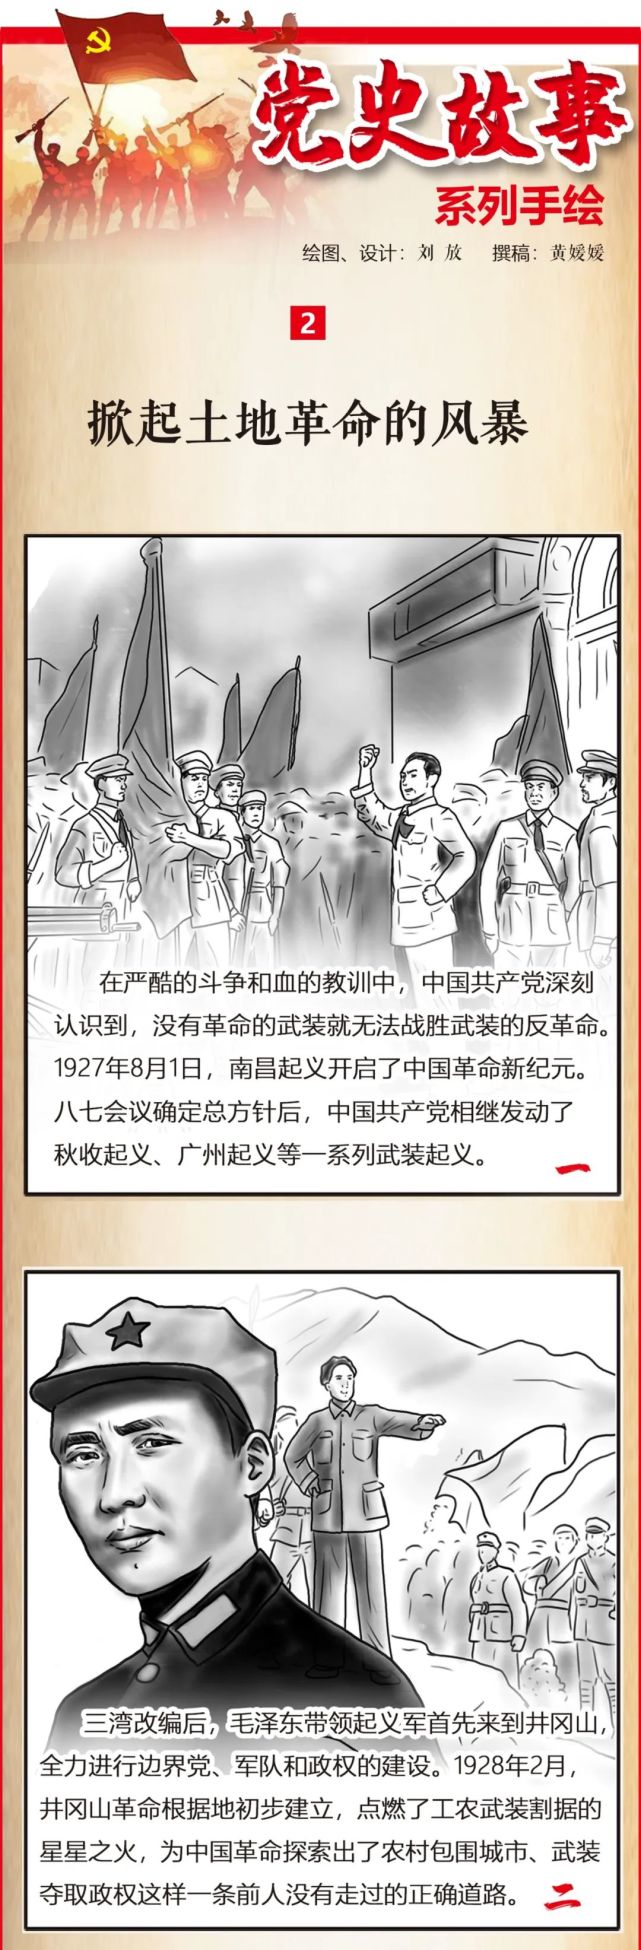 淮南日报原创党史故事手绘掀起土地革命的风暴